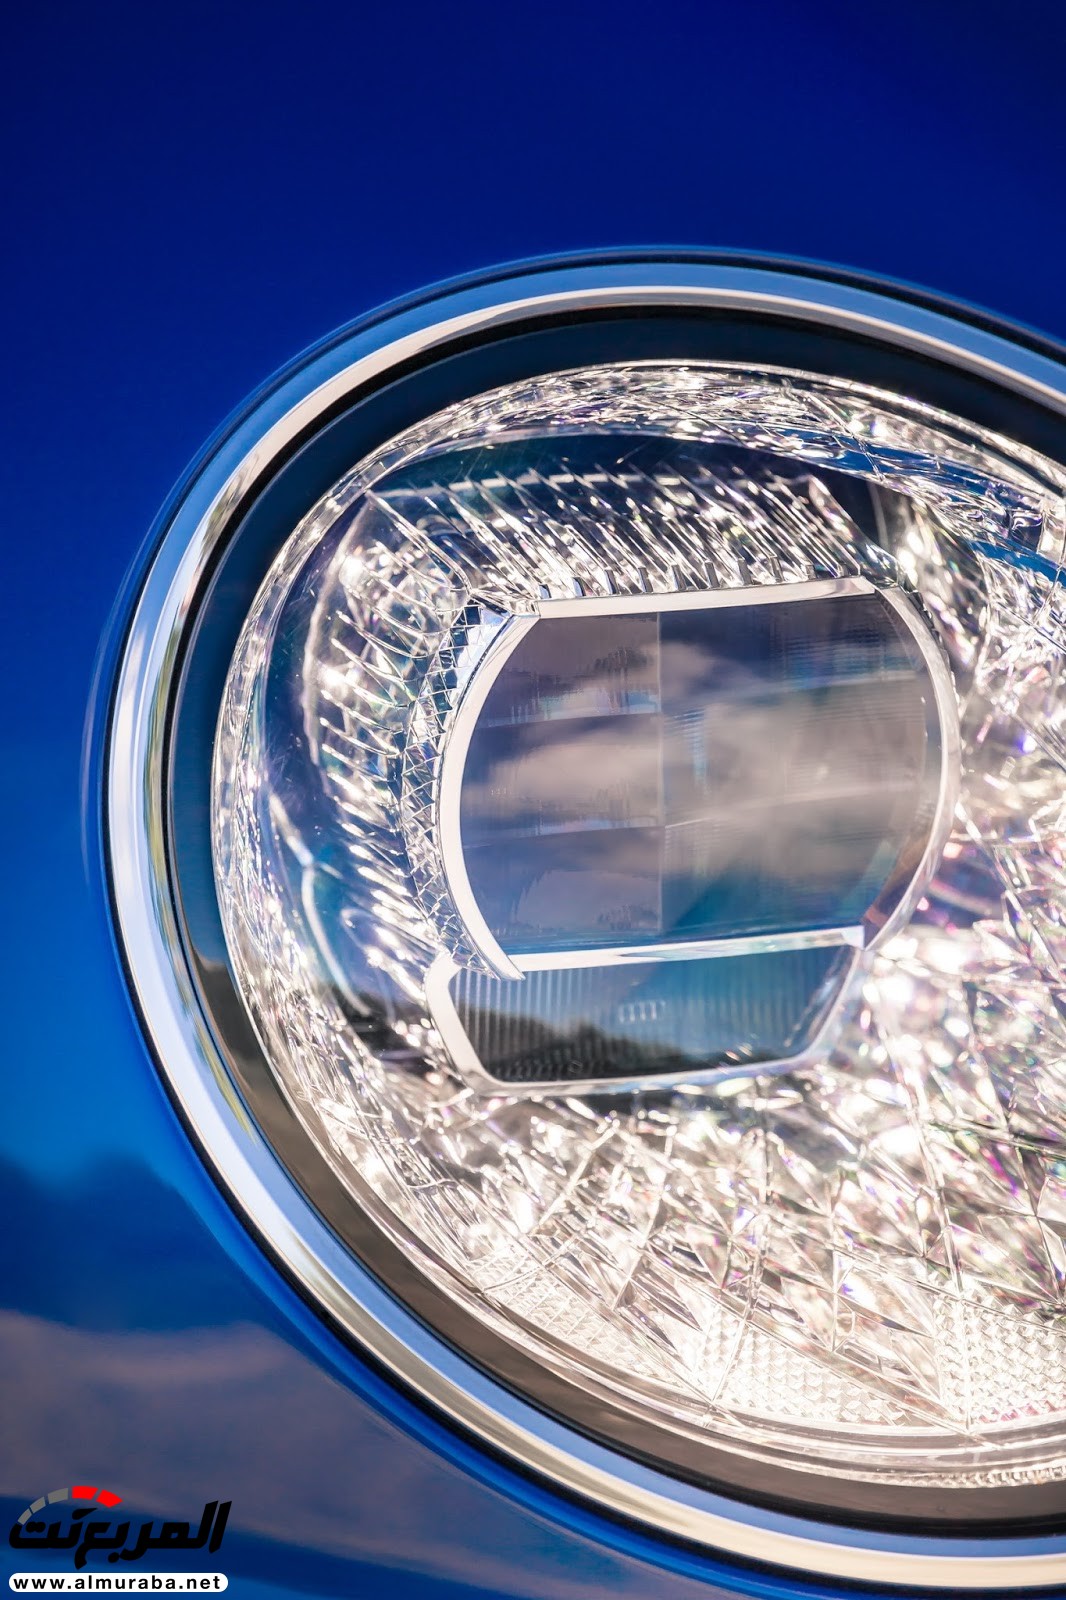 بنتلي كونتيننتال GT 2018 الجديدة كلياً "أفخم سيارة رياضية" تكشف نفسها رسمياً + صور ومواصفات 79